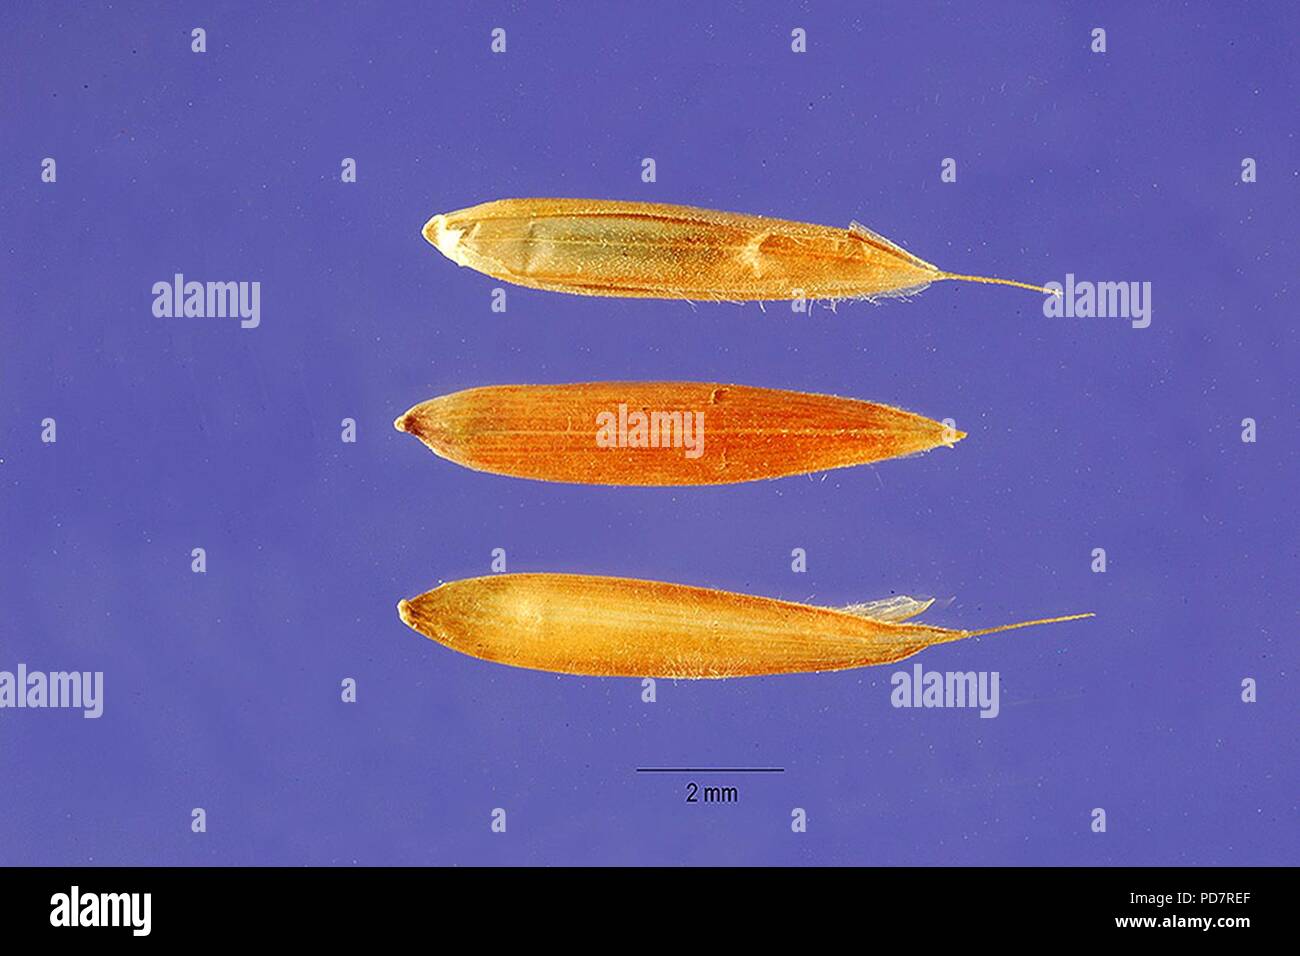 Andropogon gayanus seeds. Stock Photo